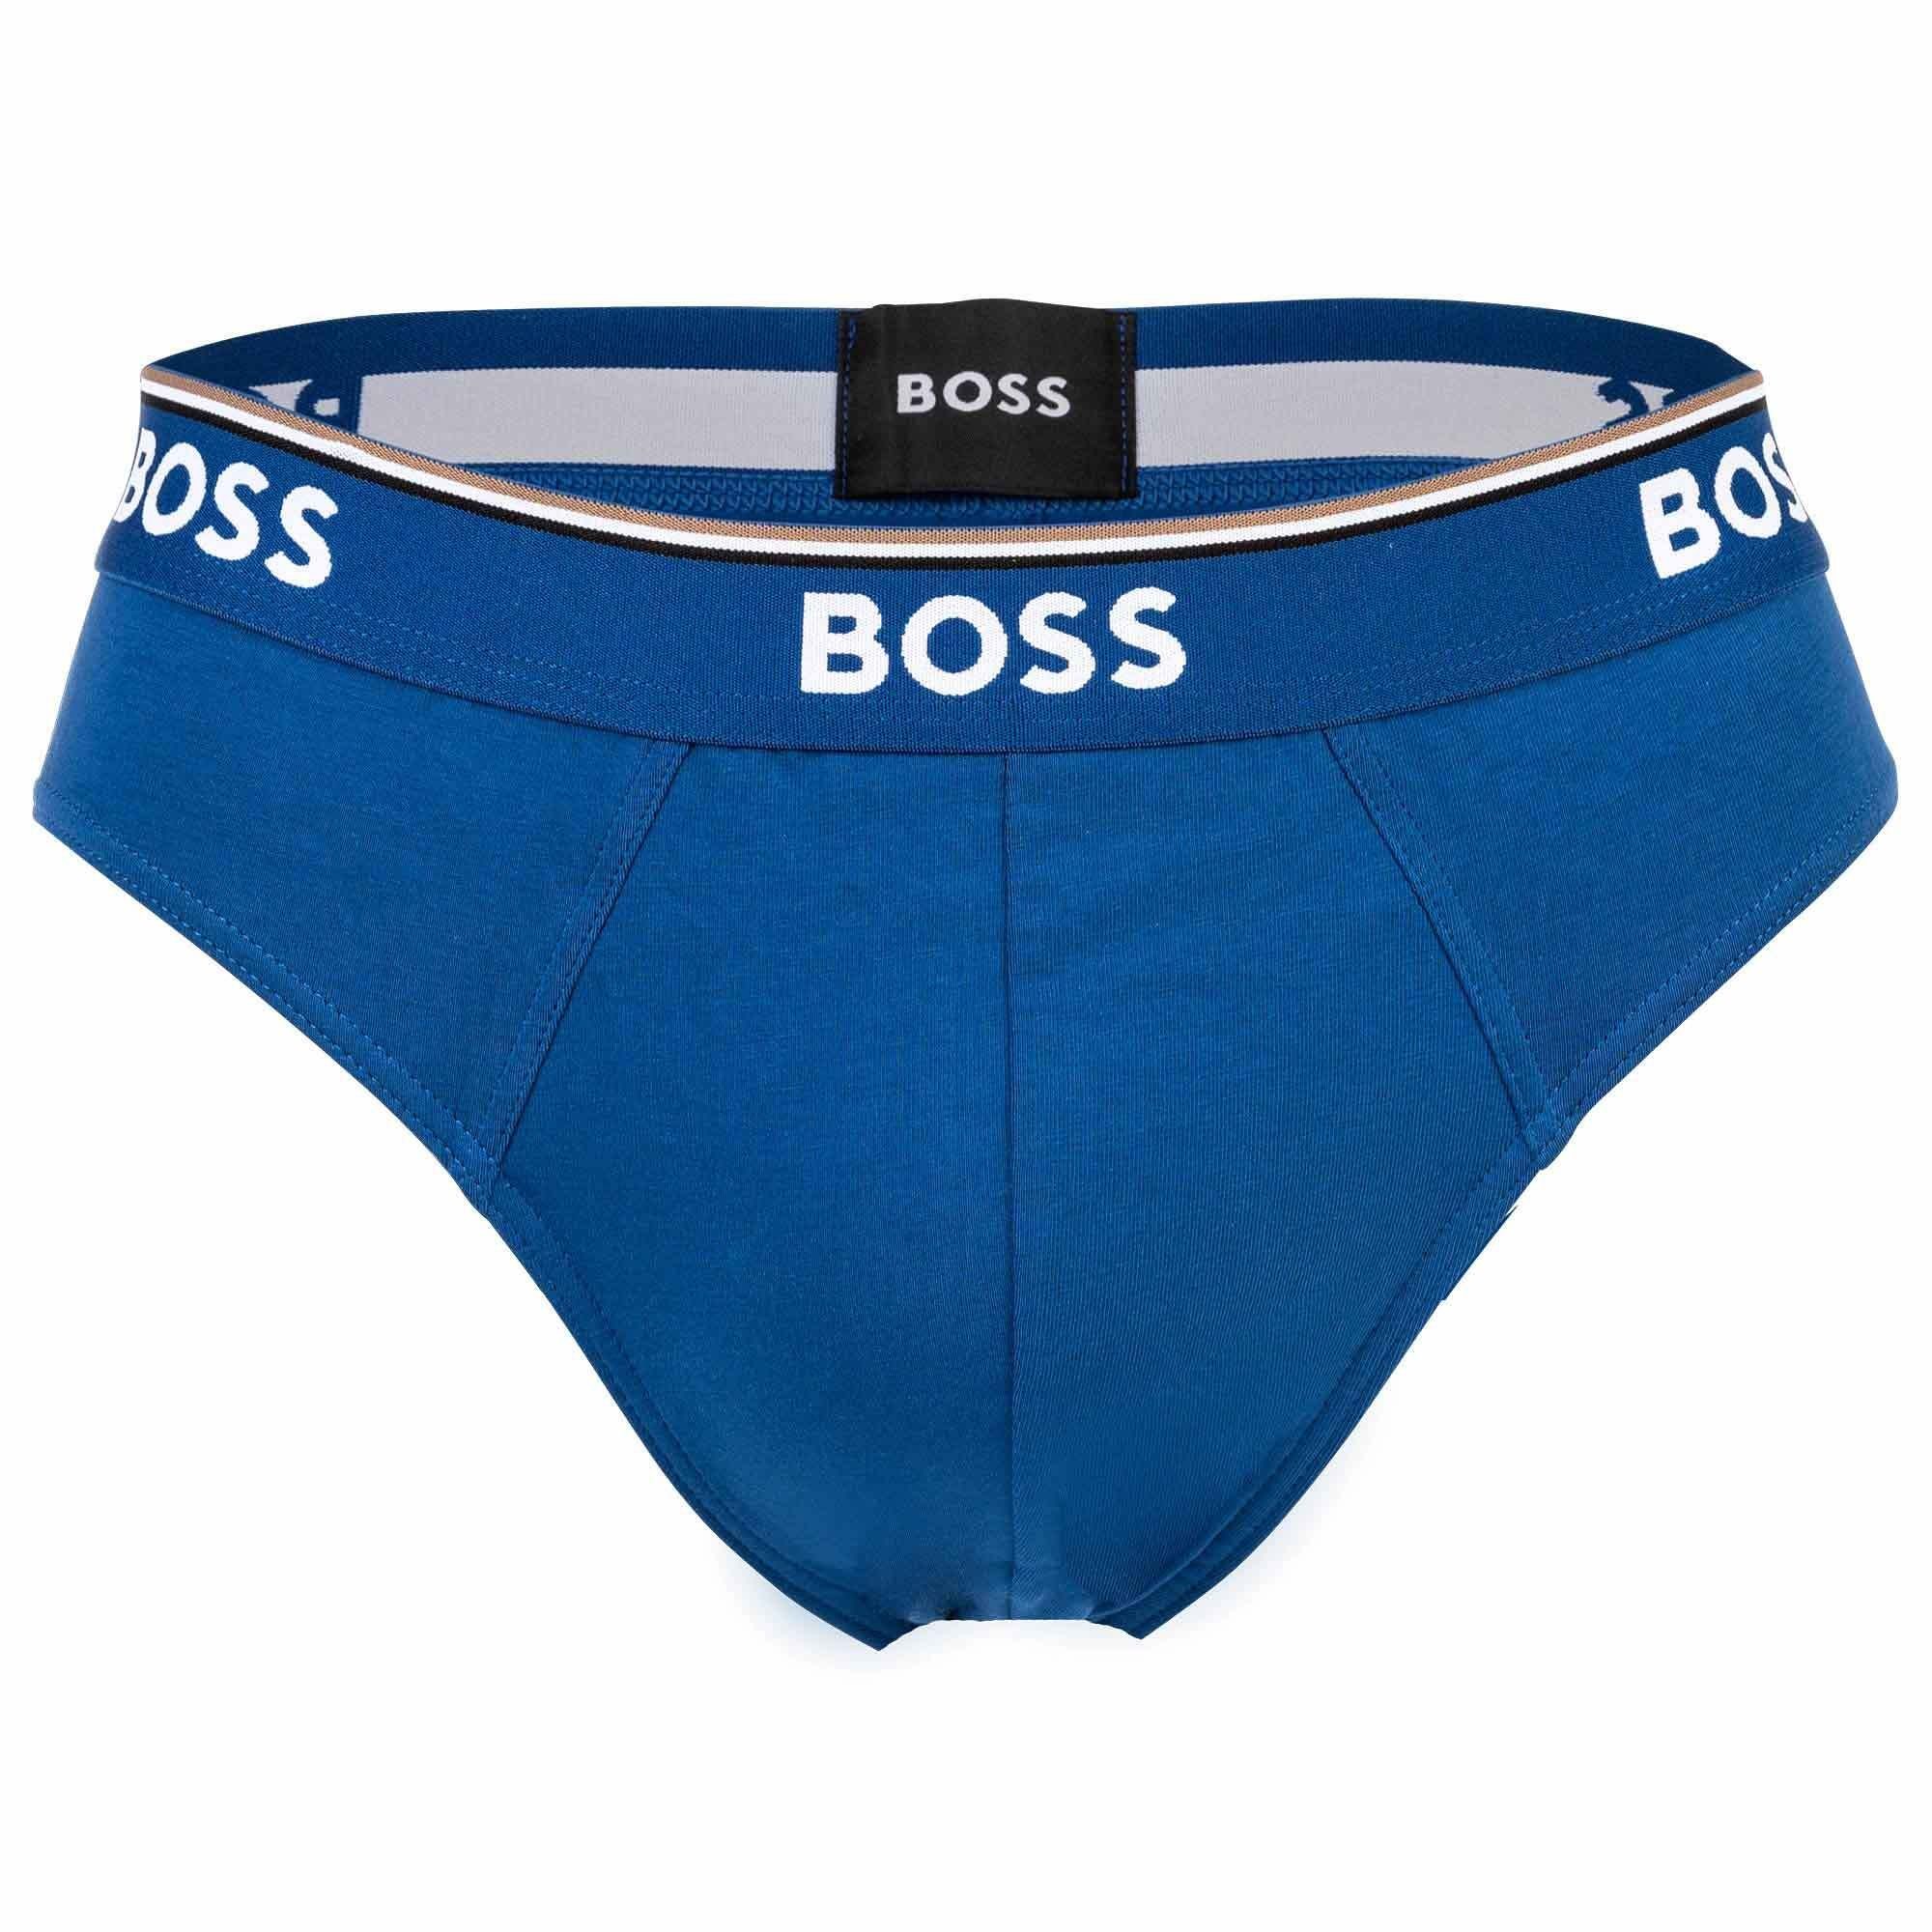 HUGO BOSS Slip Briefs Rot/Blau/Schwarz Cotton Pack - 3P Power, Herren 3er Slips